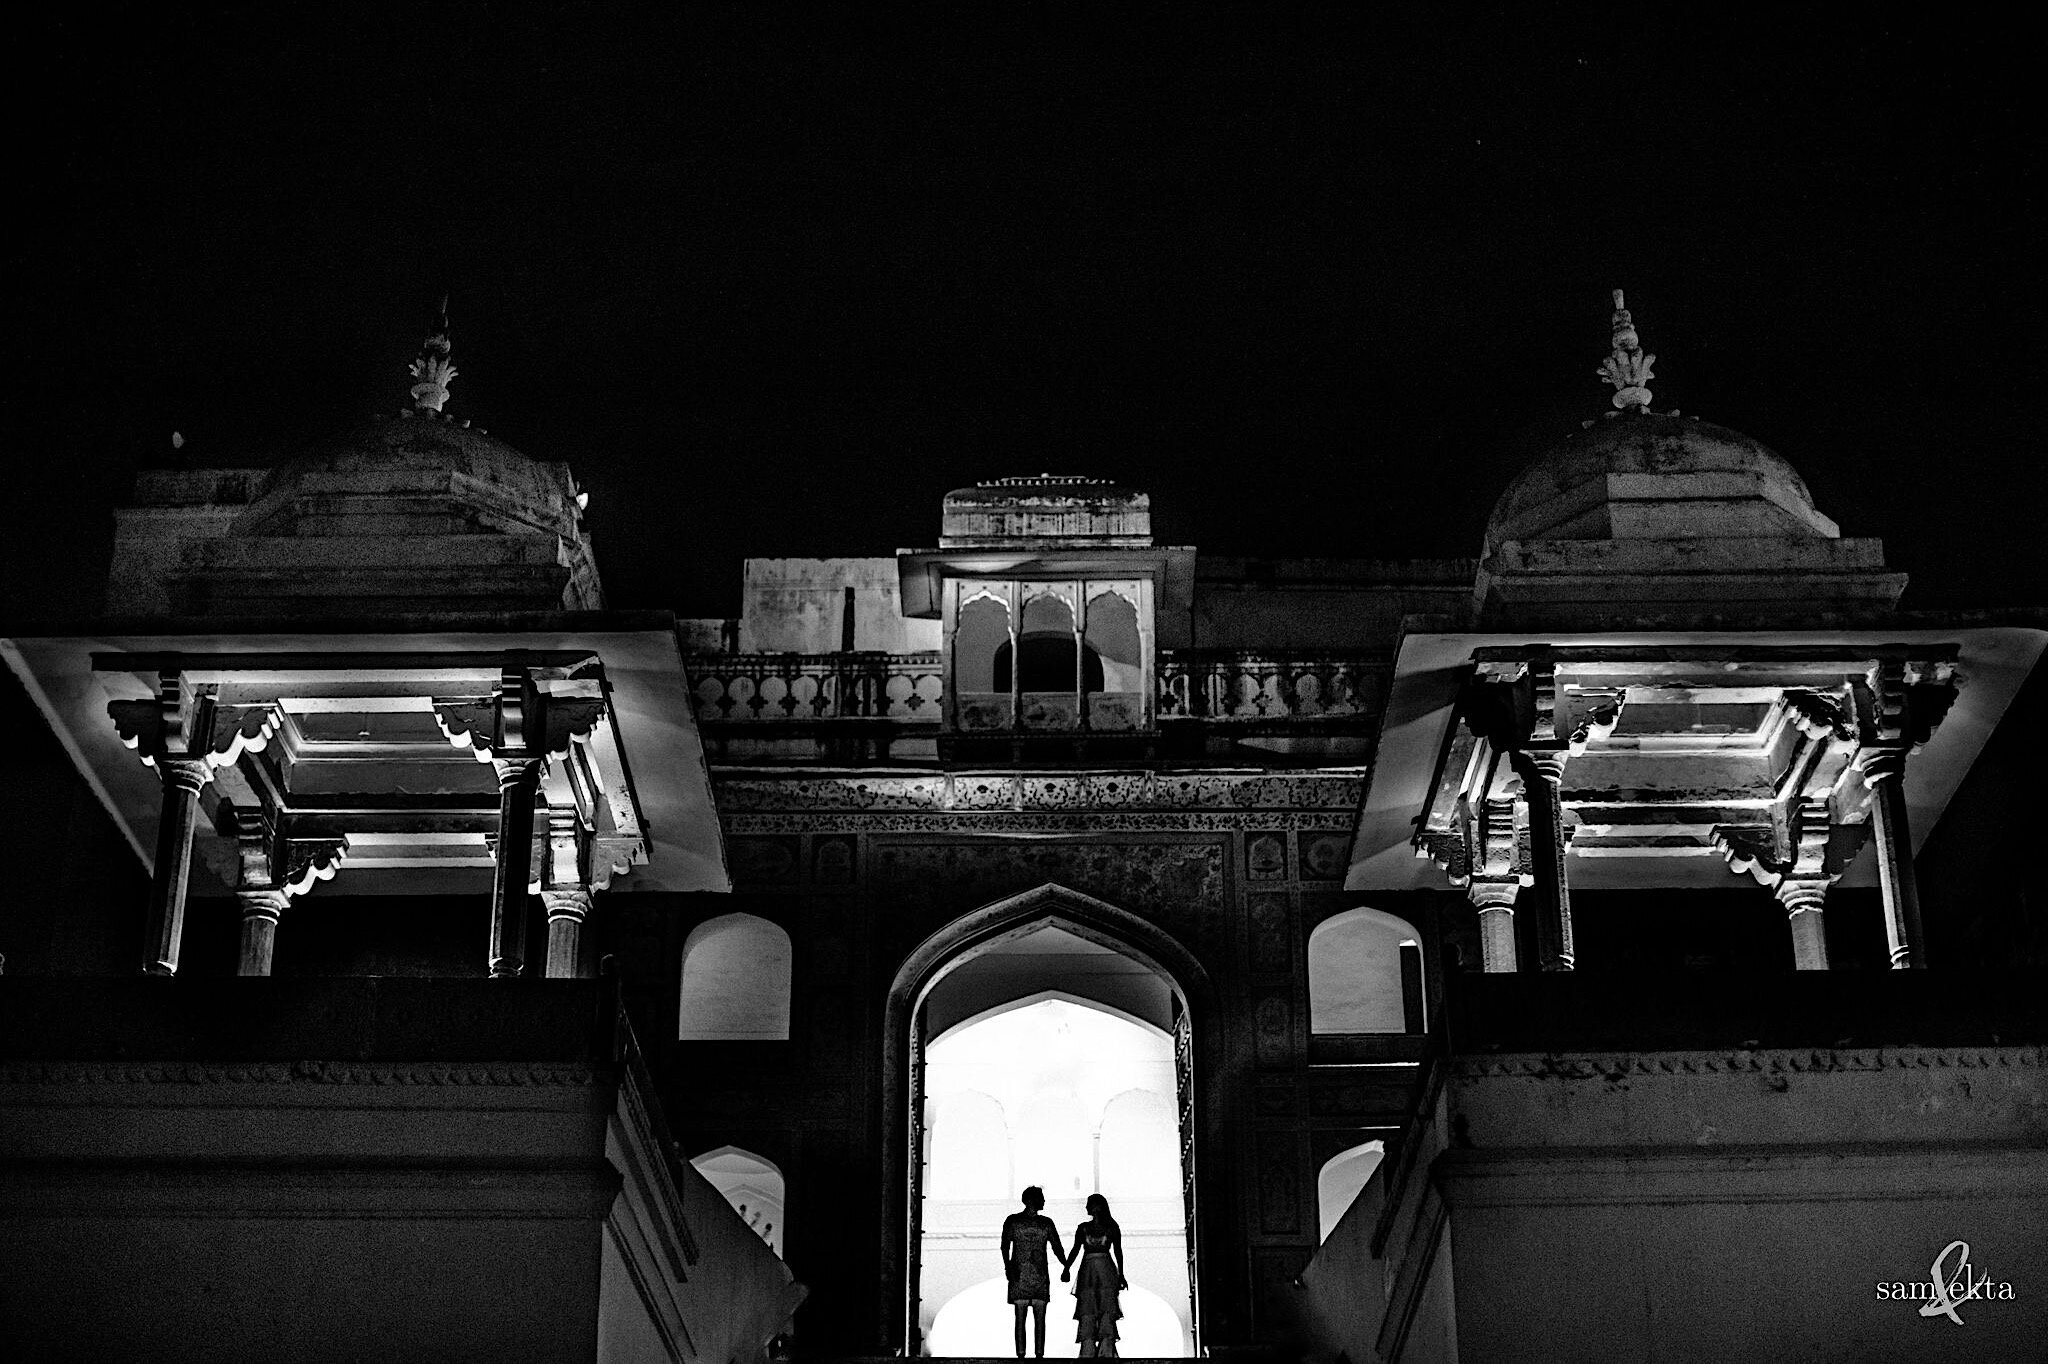 008_1_1_S&L_www.samandekta.com-Jaipur-118.jpg